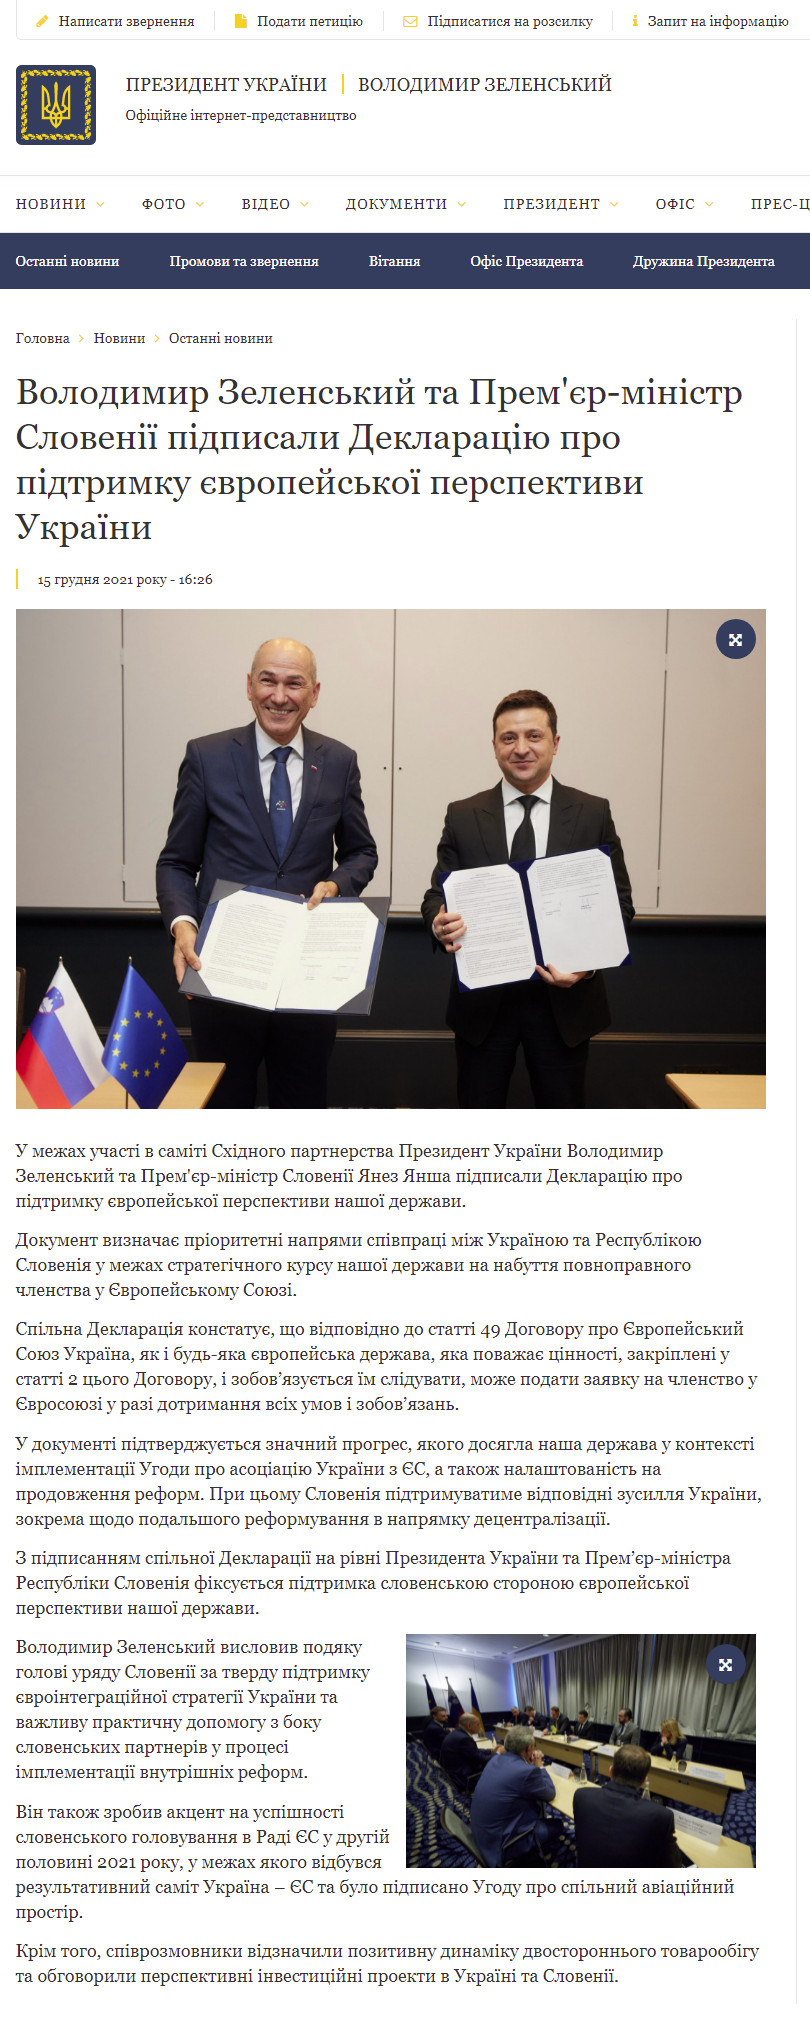 https://www.president.gov.ua/news/volodimir-zelenskij-ta-premyer-ministr-sloveniyi-pidpisali-d-72057